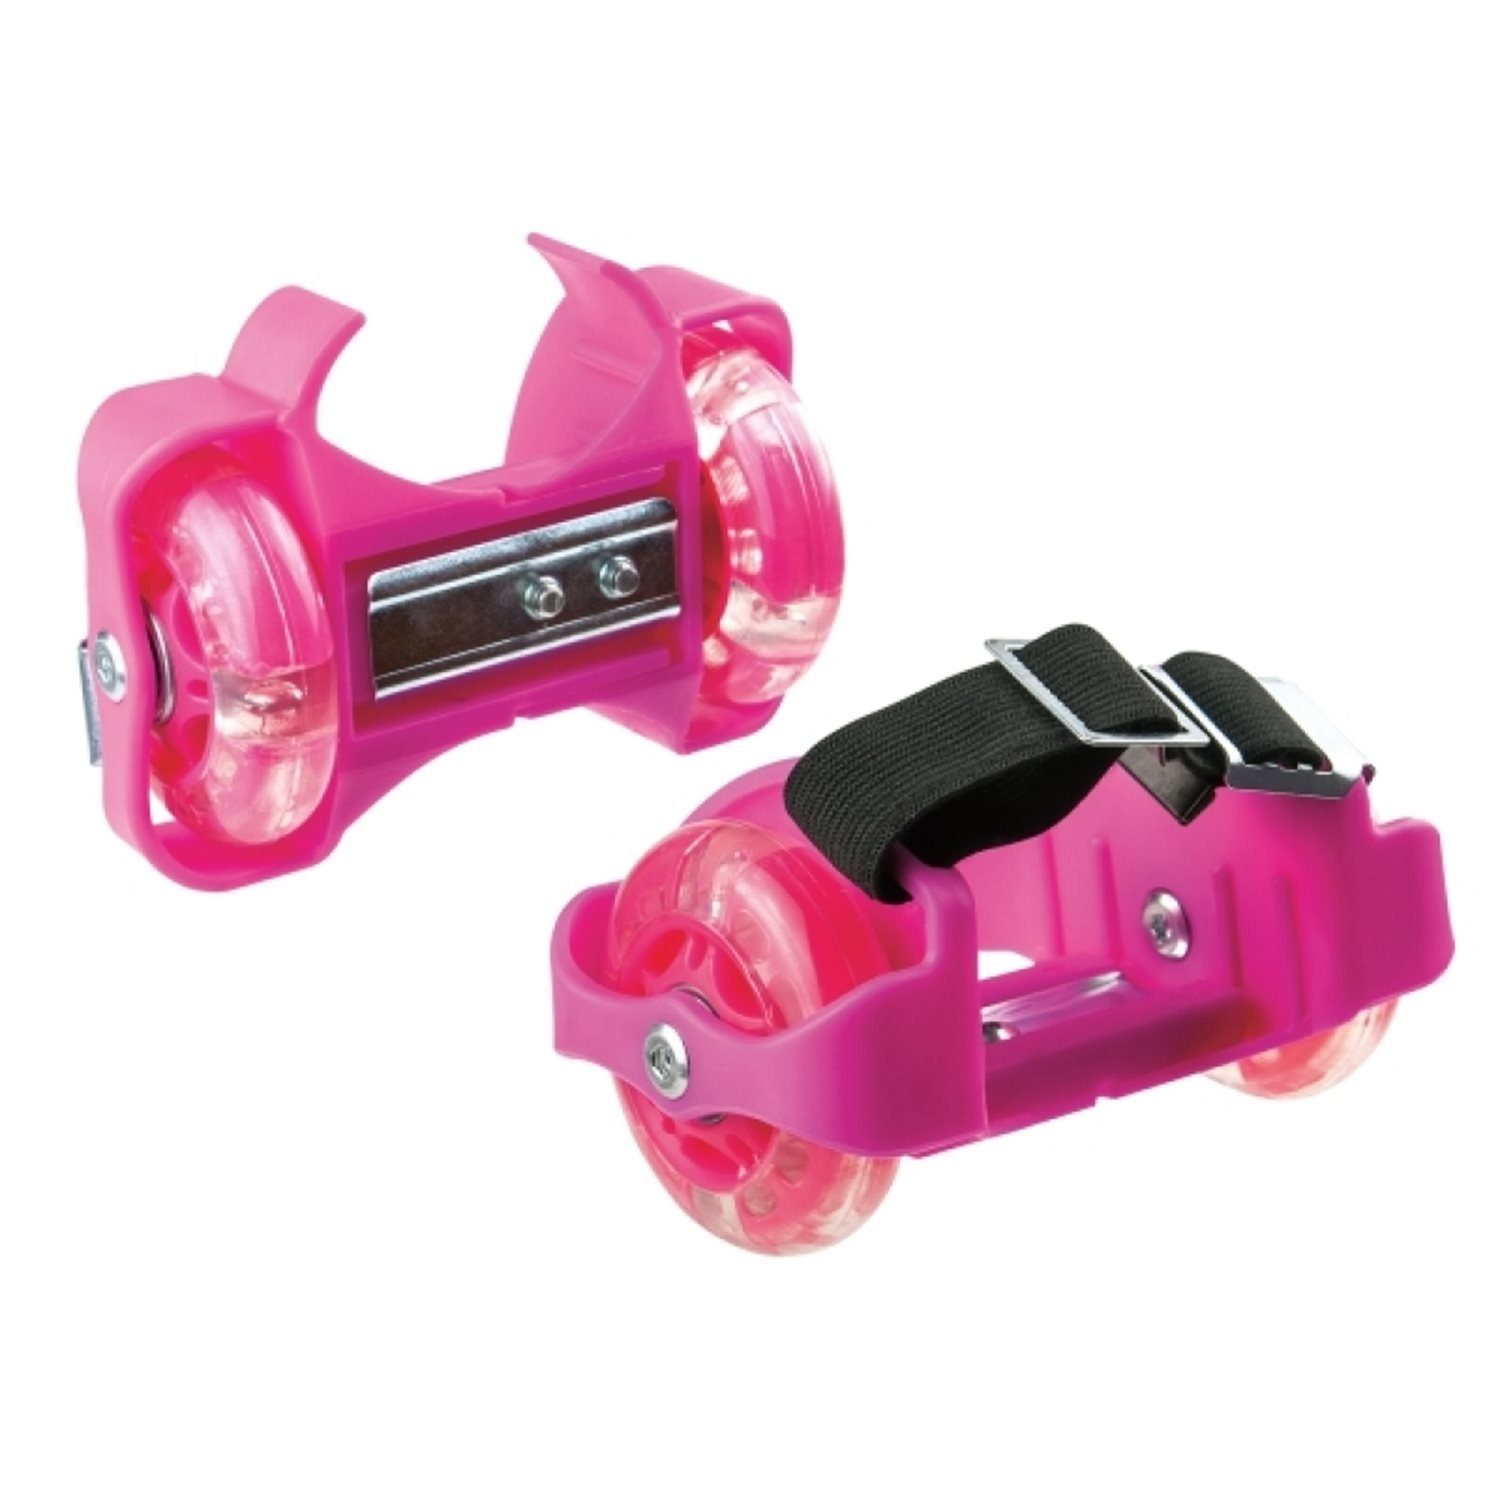 Sports 73420491 Fersenroller pink LED, New mit Basketballkorb Vedes